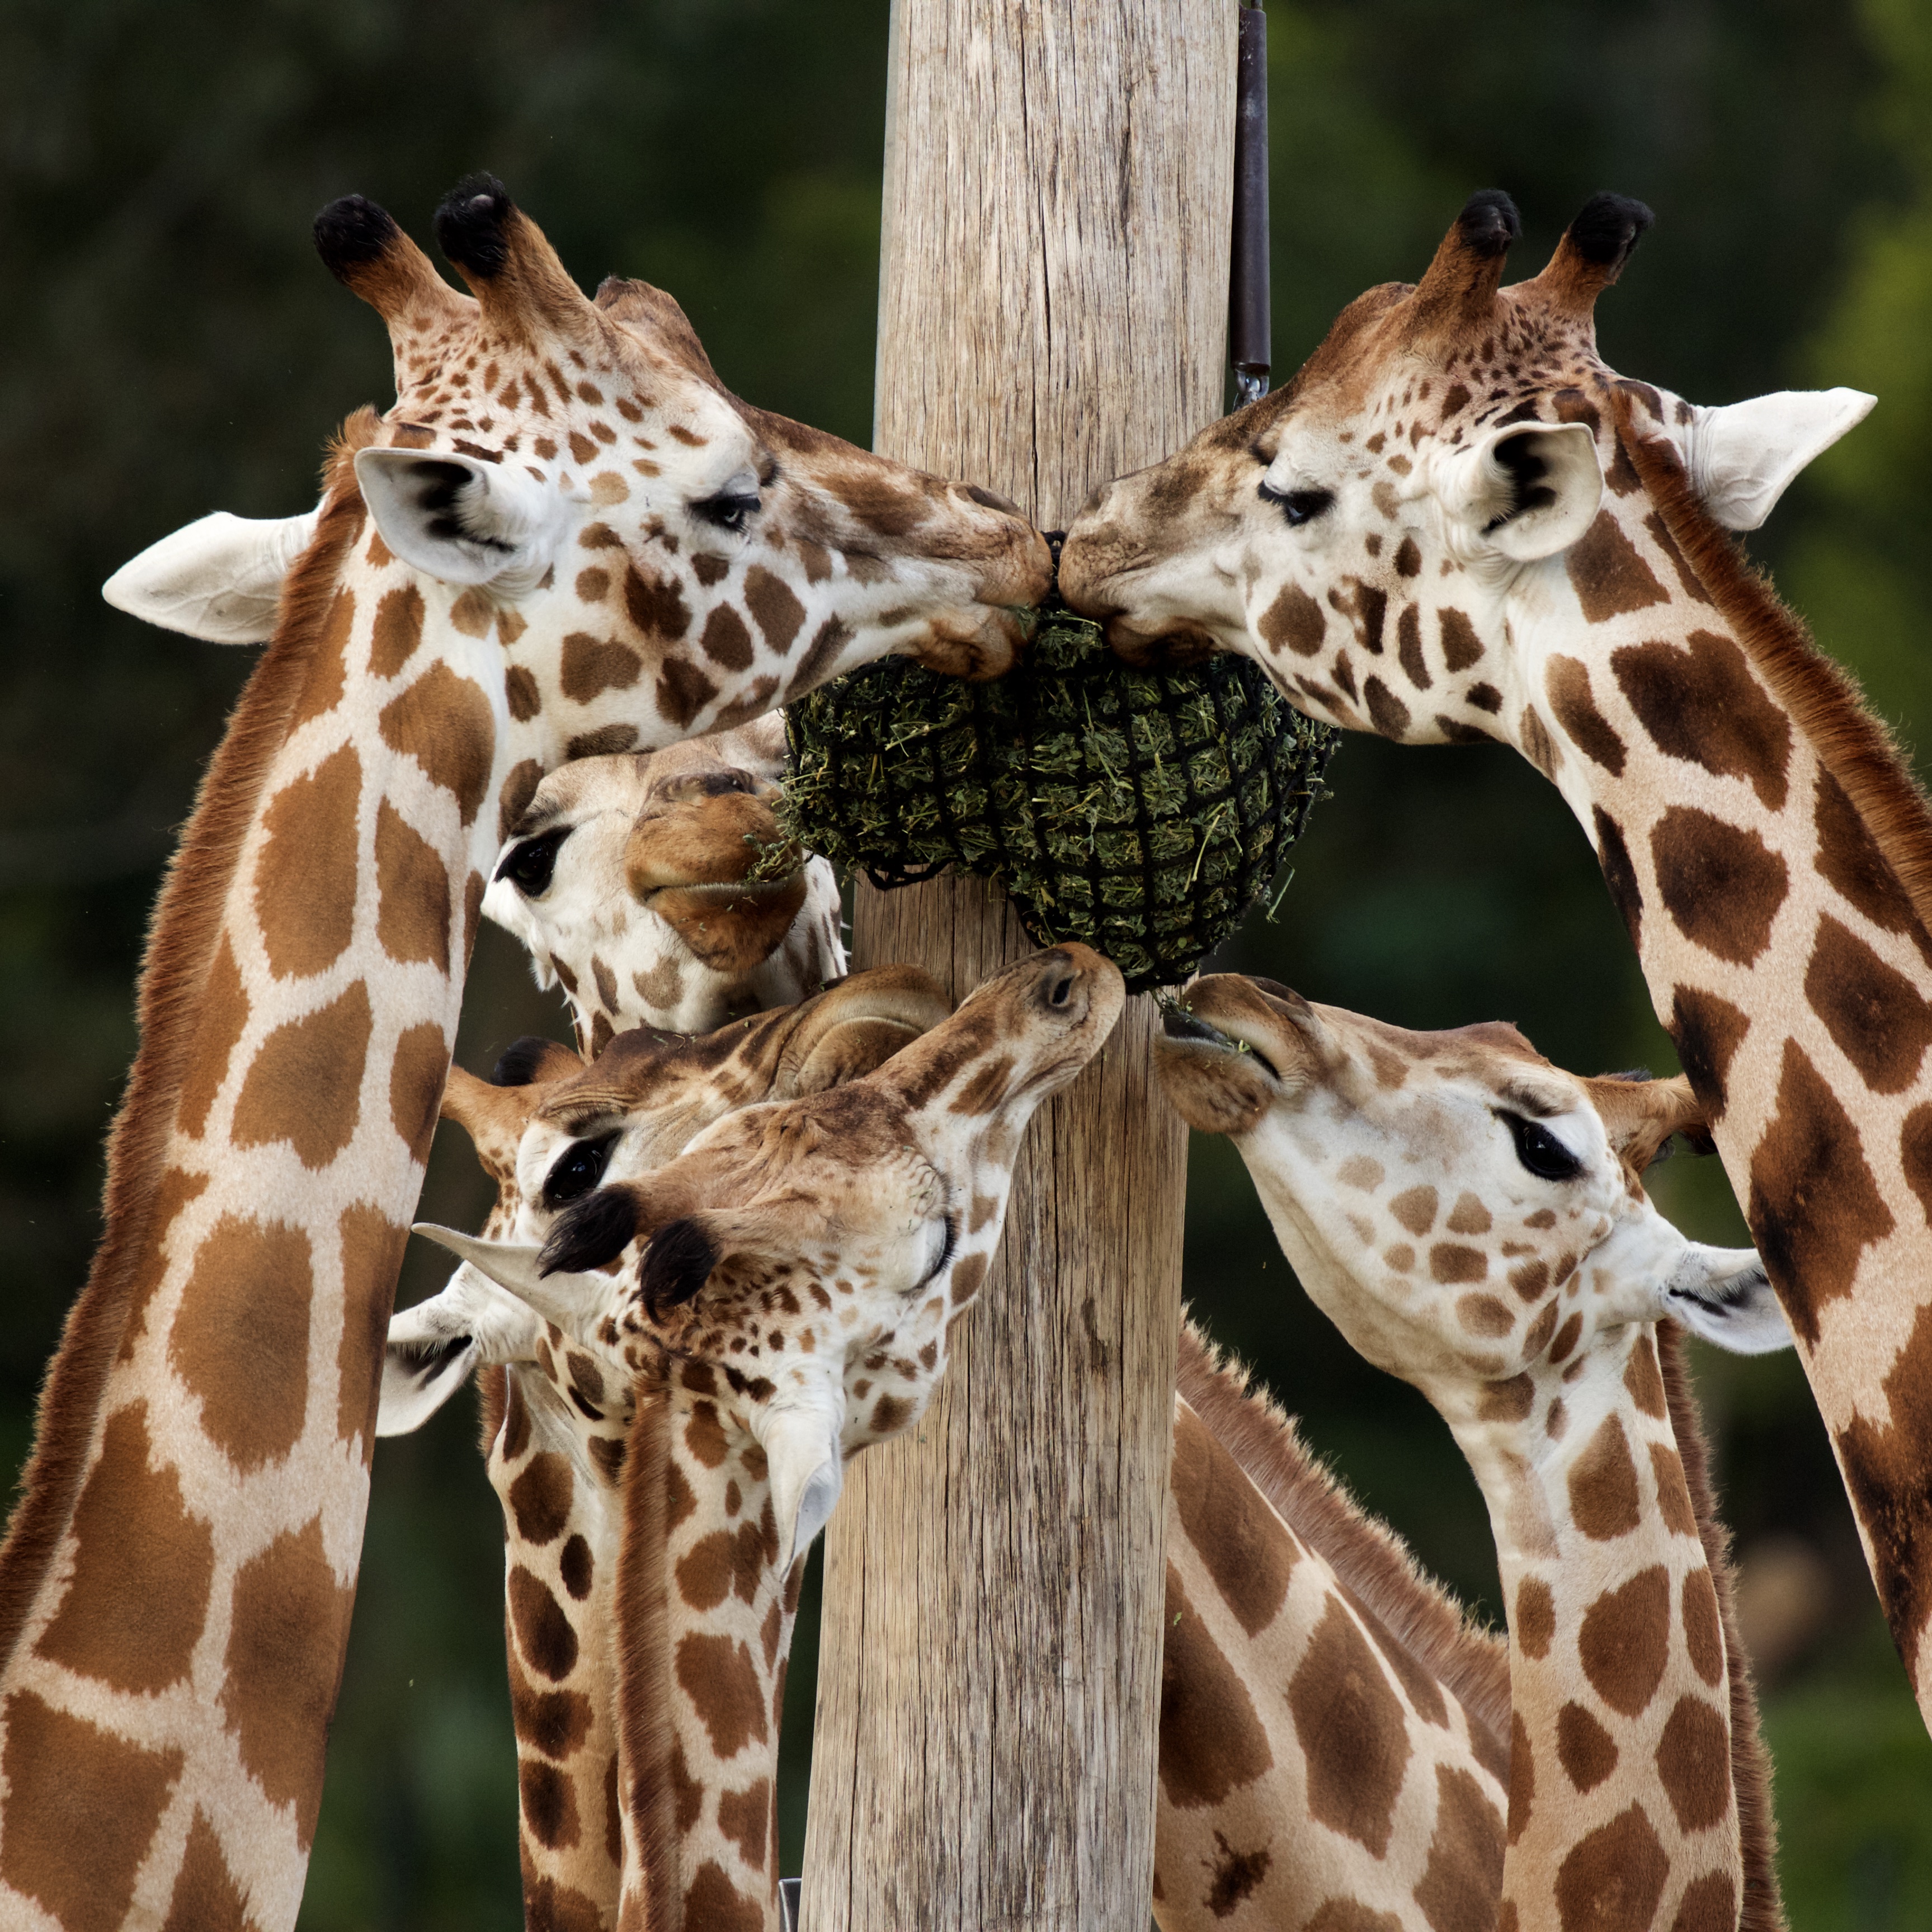 Giraffe family portrait